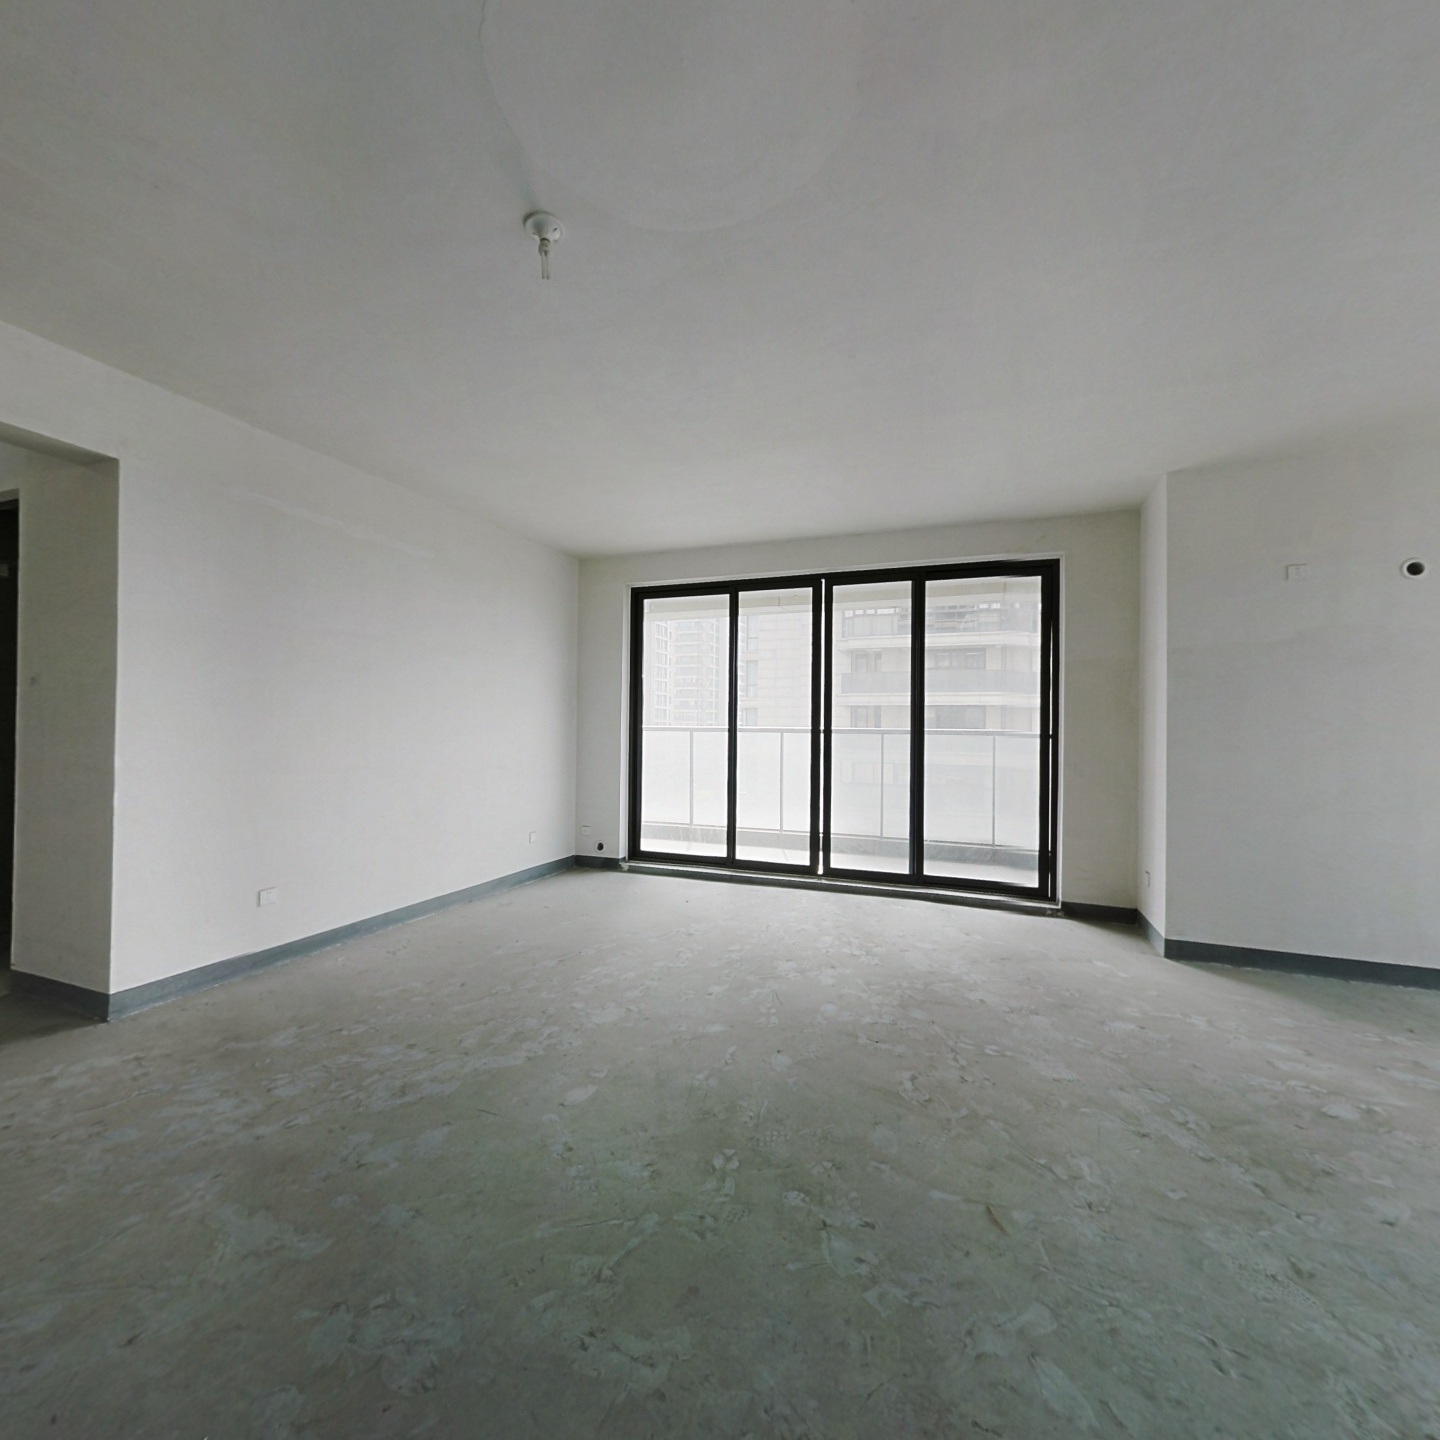 杭州绿城开发高品质小区四居室两房朝南房屋出售